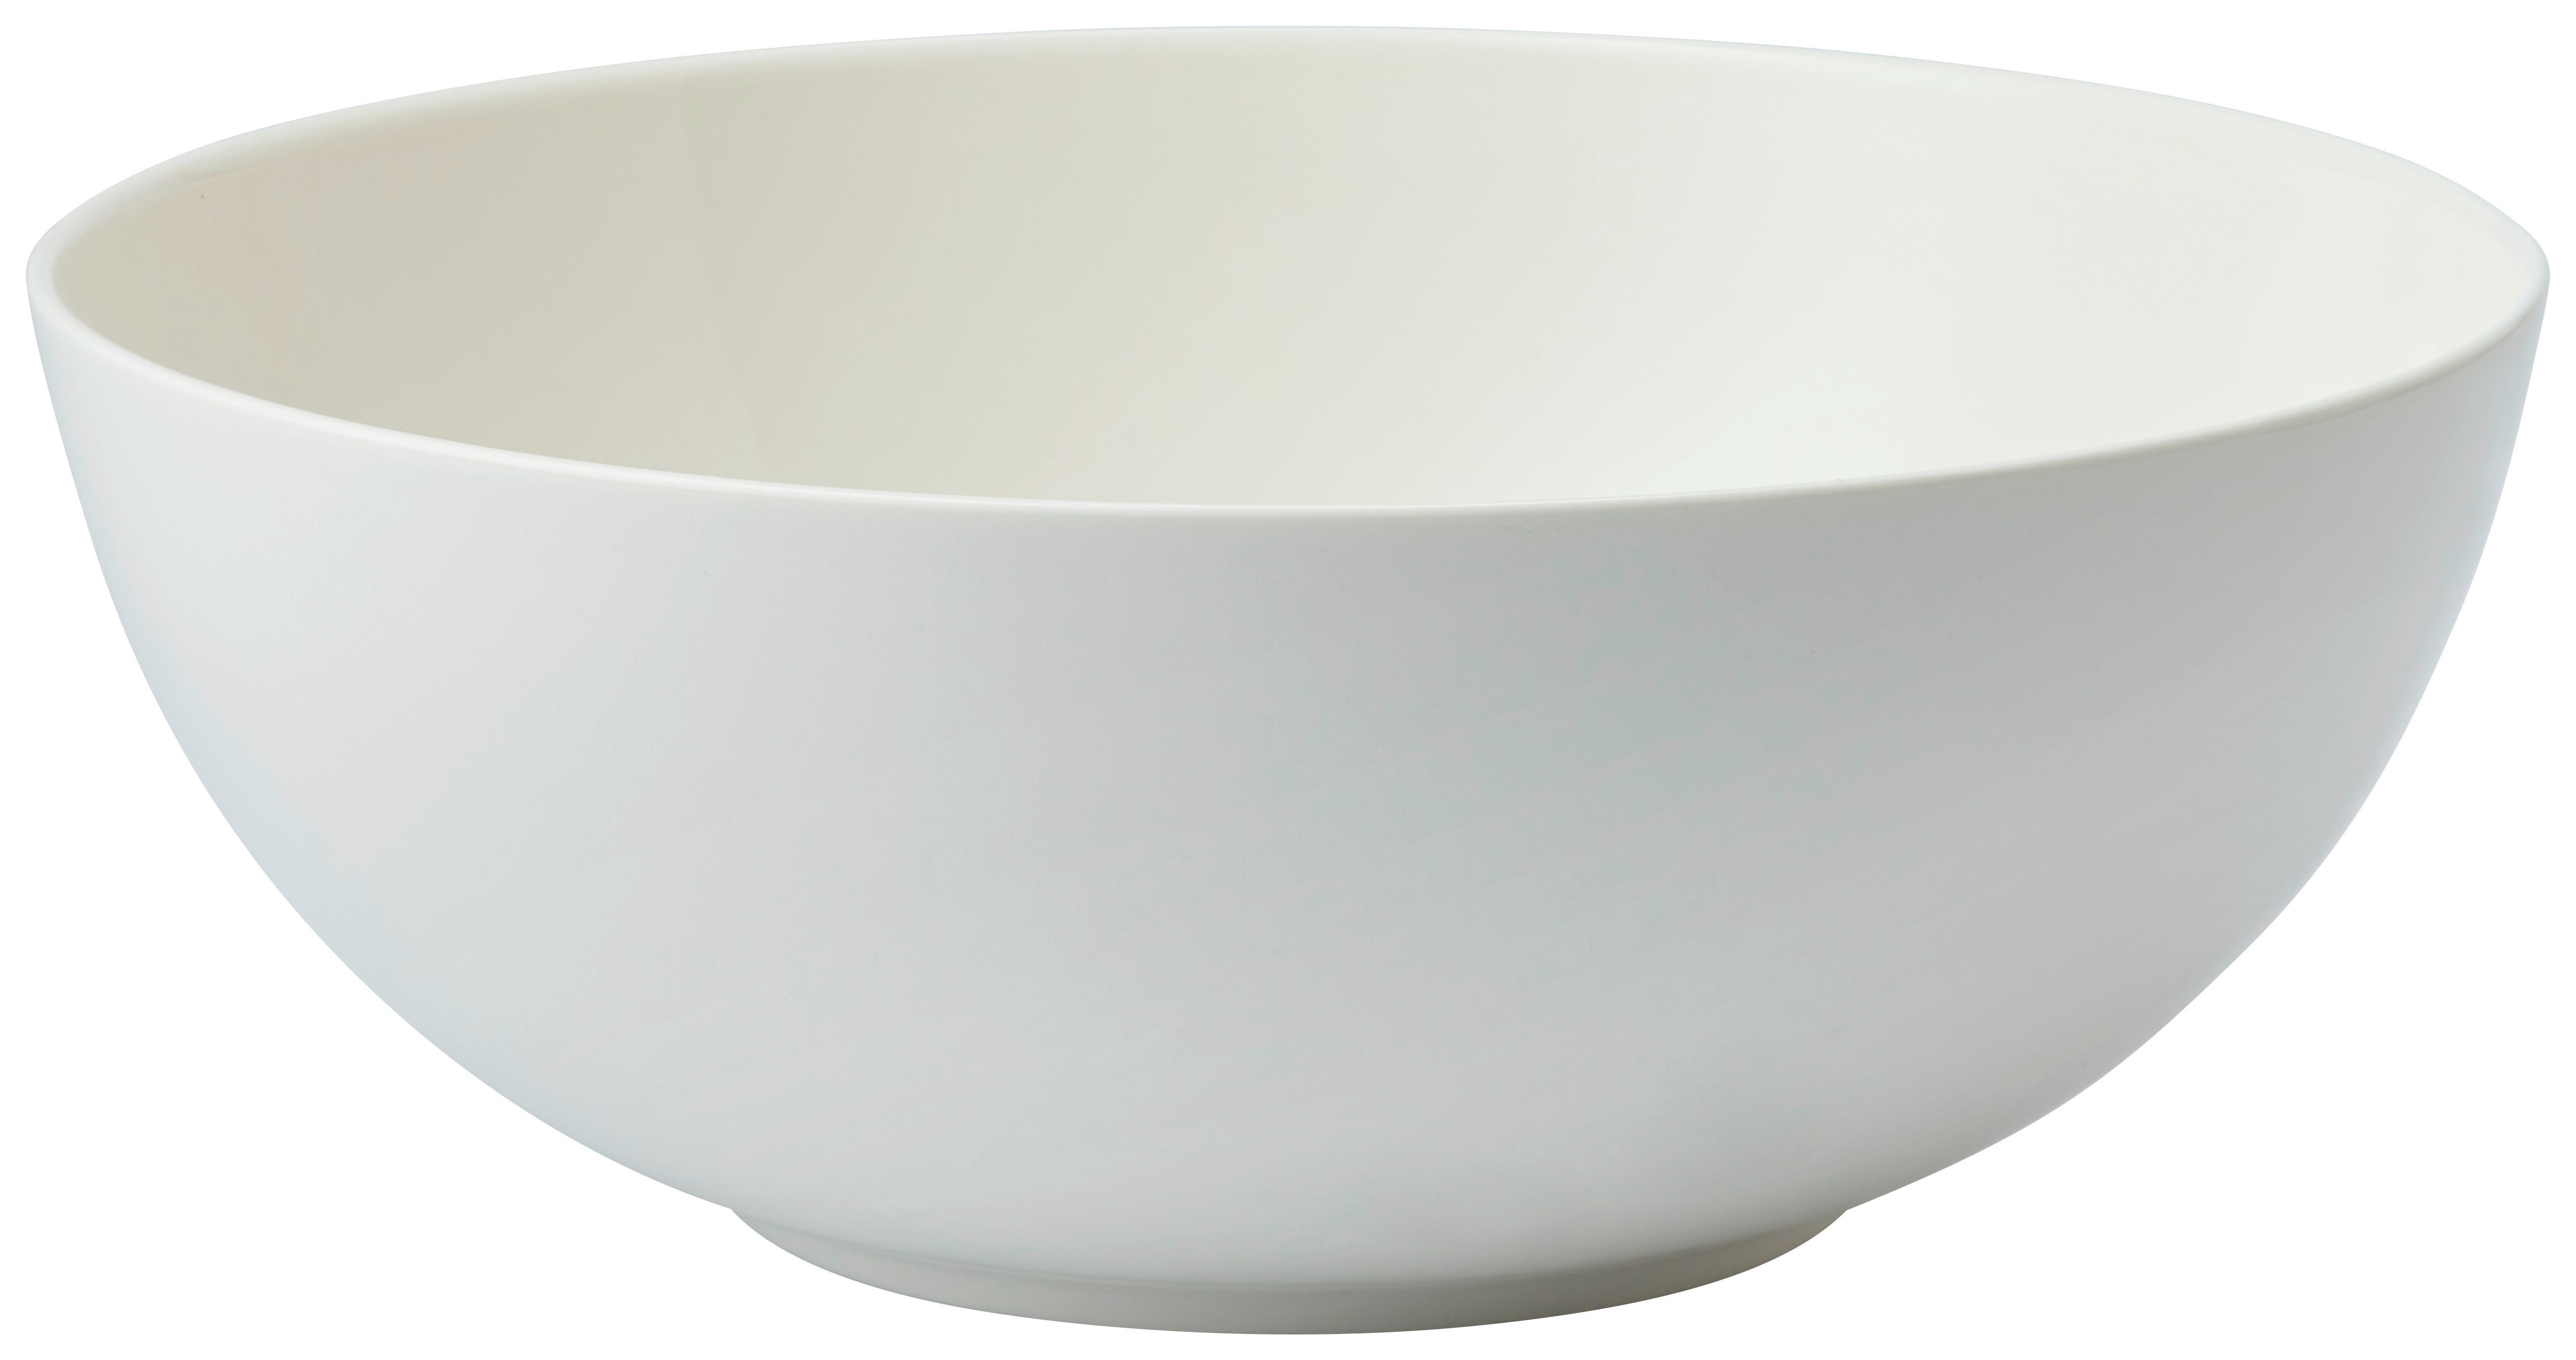 SCHÜSSEL Basic White 22,5 cm   - Weiß, KONVENTIONELL, Keramik (22,5cm) - Villeroy & Boch